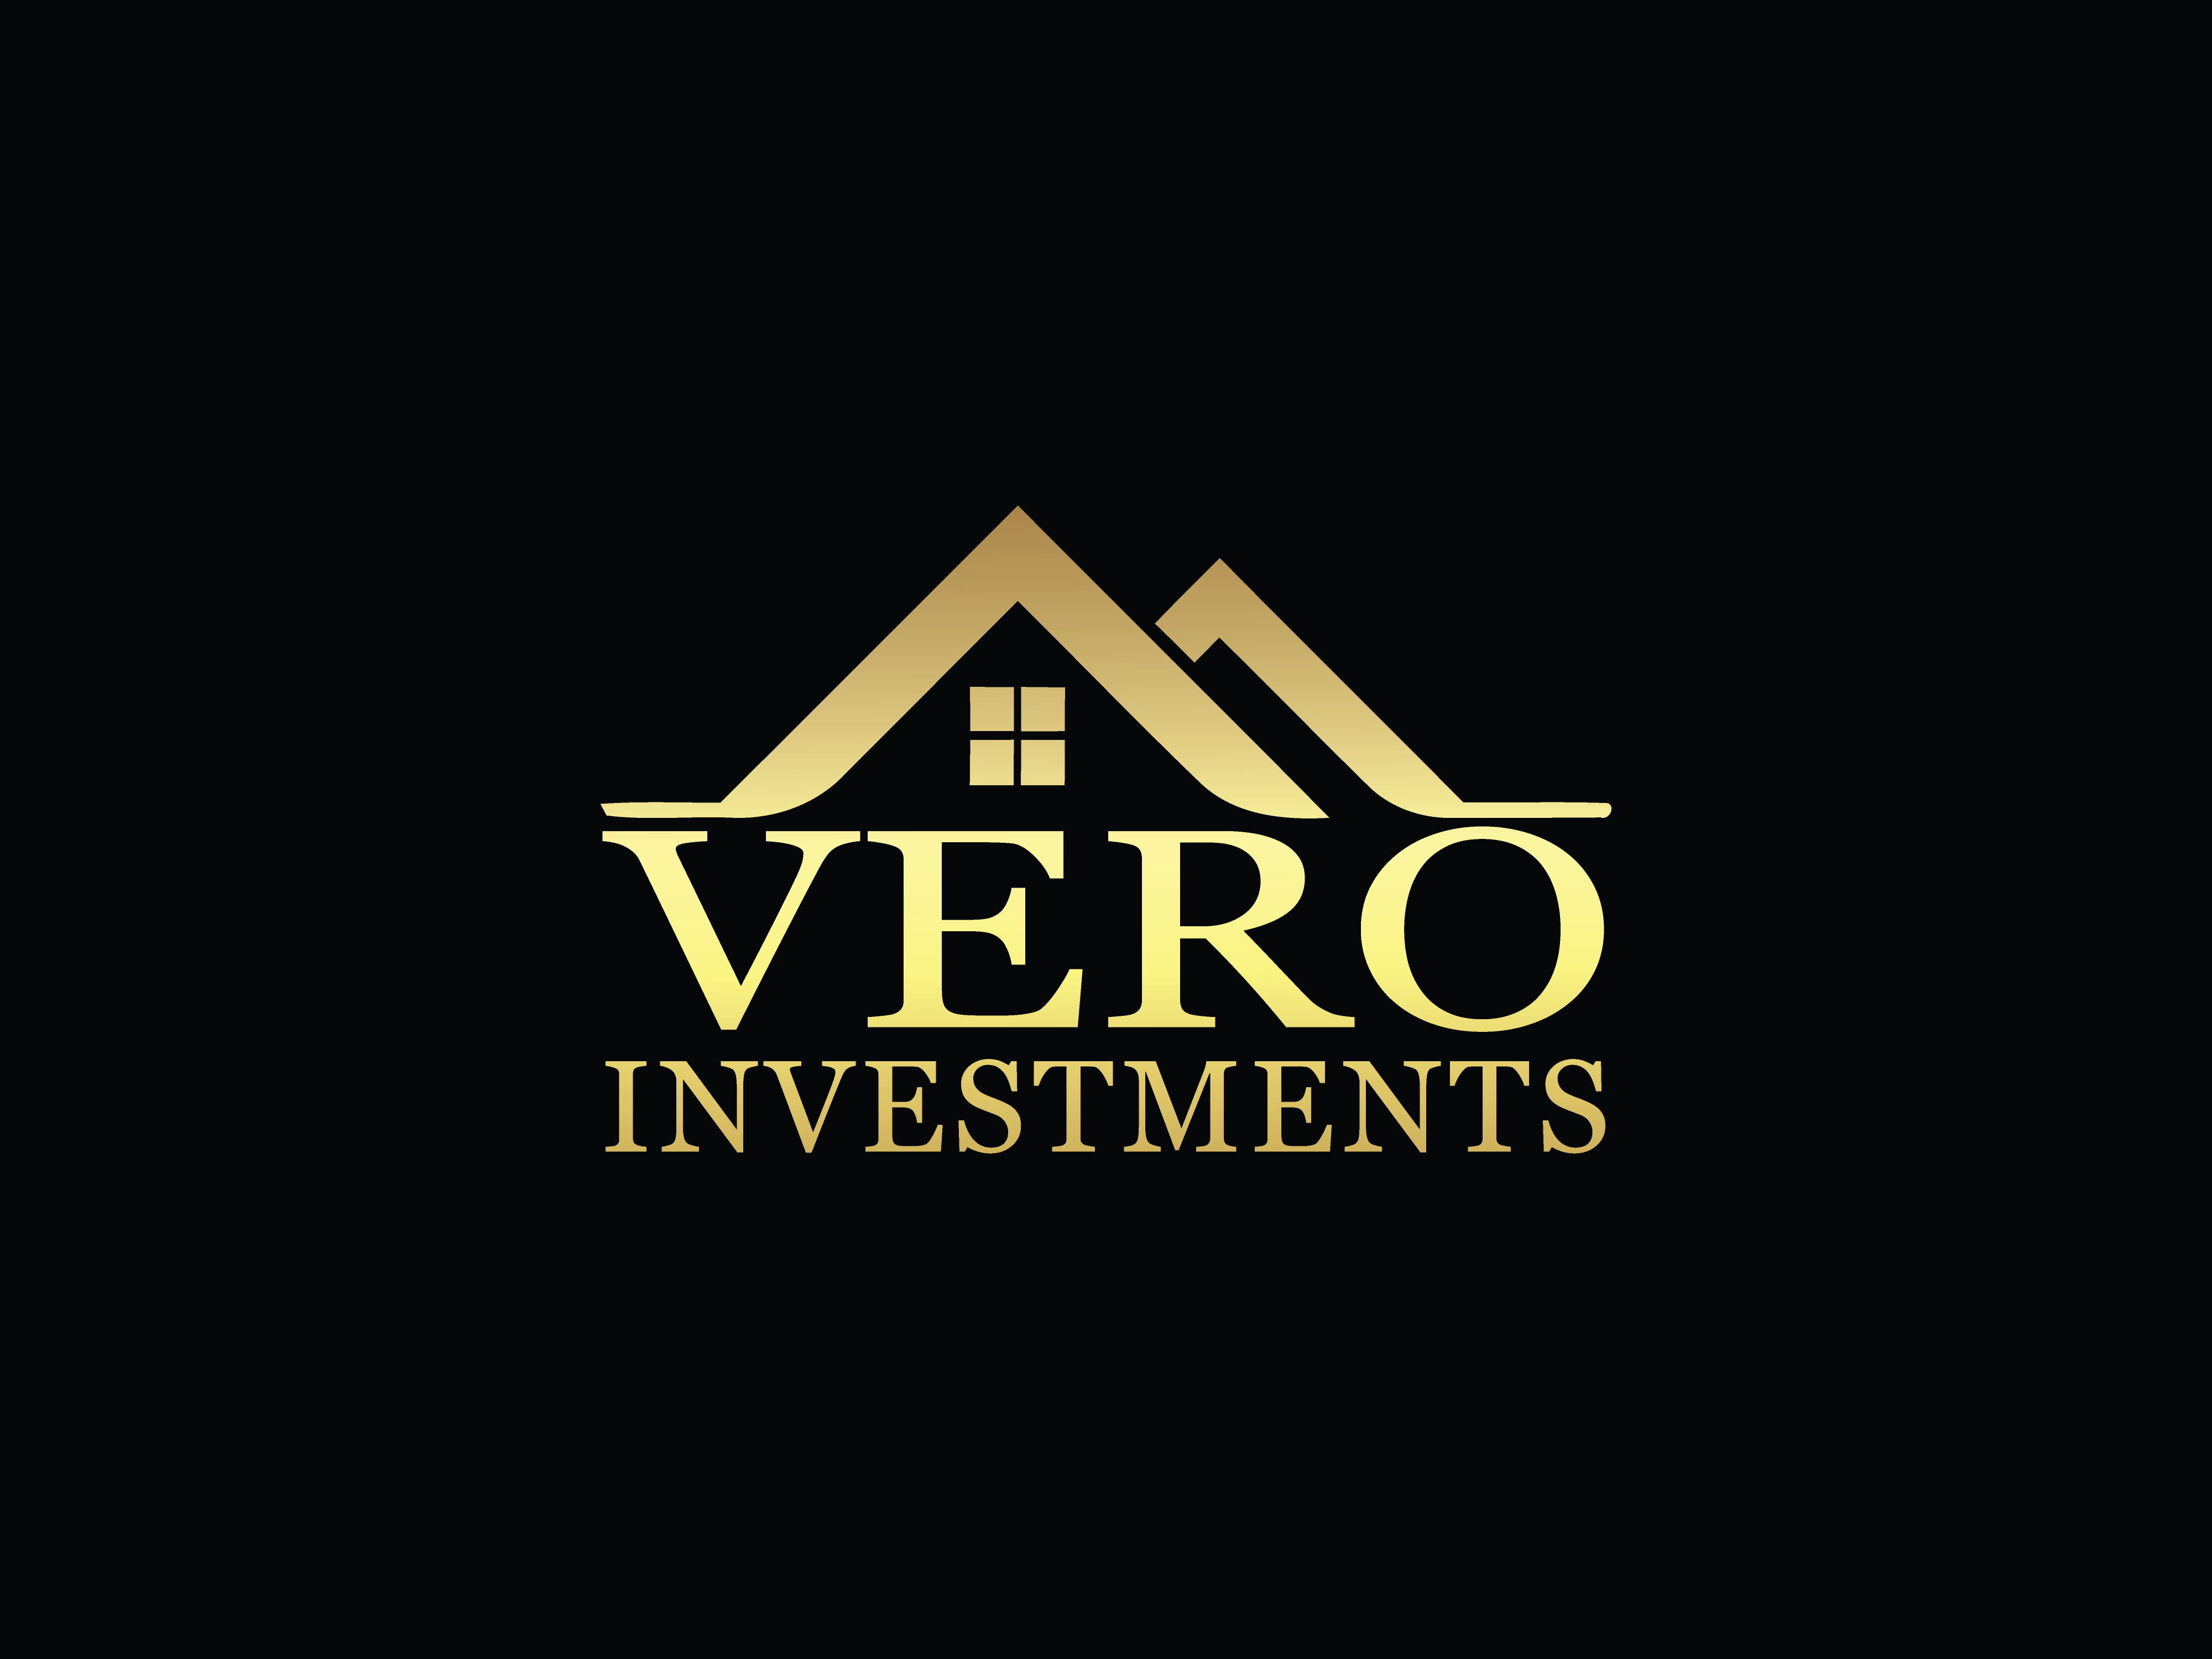 Vero Investments